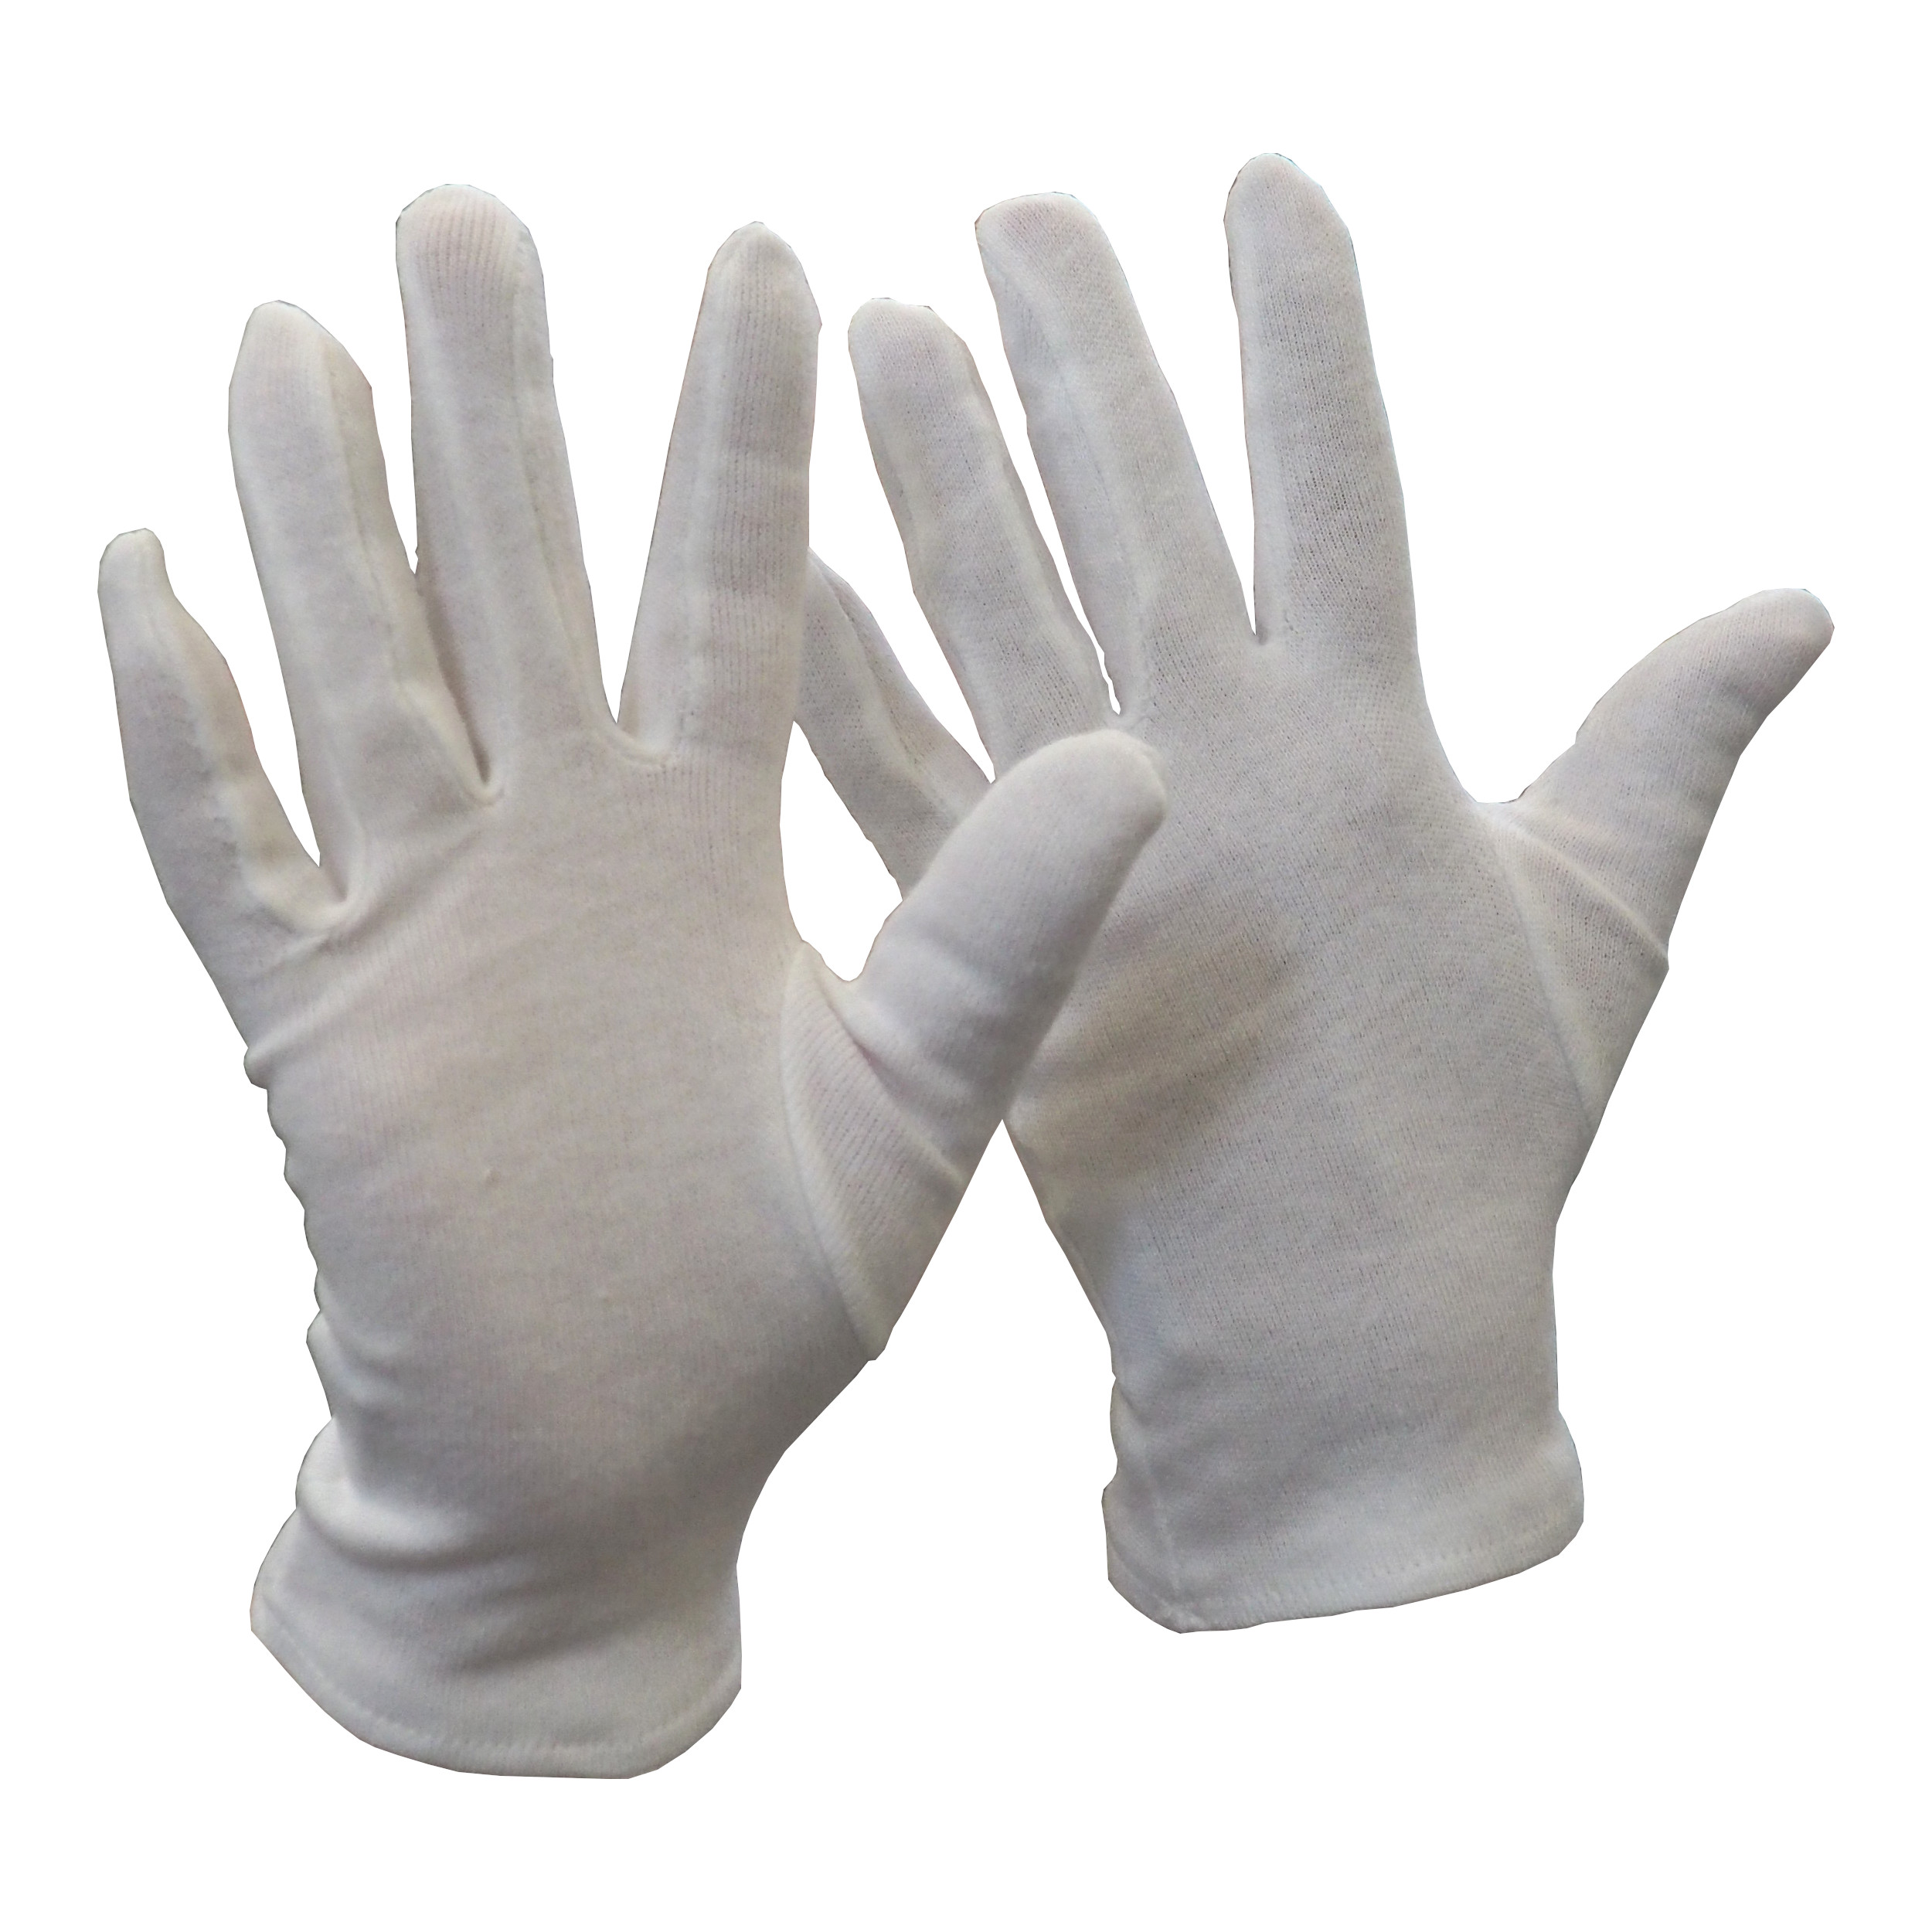 rukavice FAWA, textilní, bílé, velikost 7 0.02 Kg TOP Sklad4 606071 58